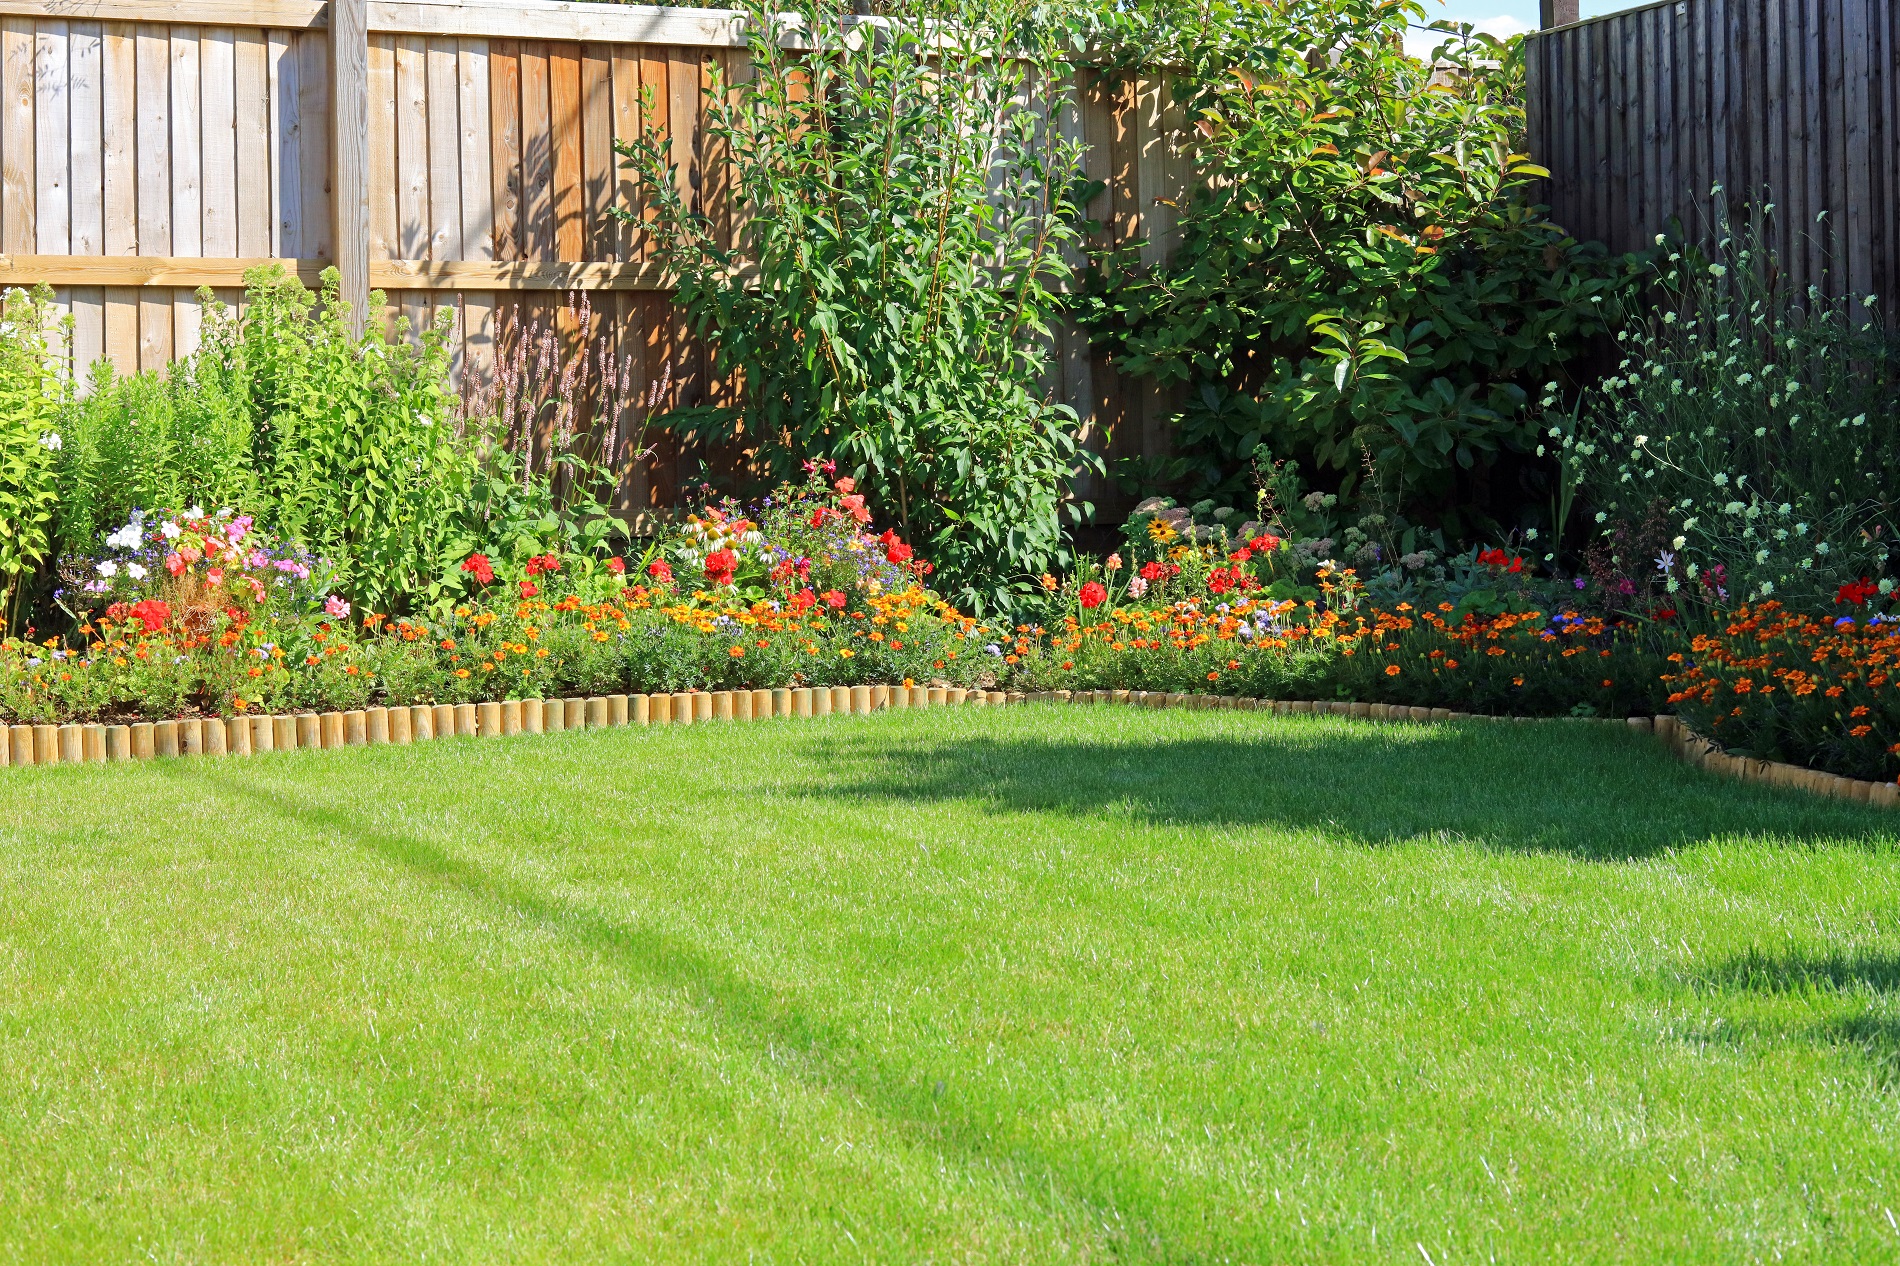 Planta cara al calor en el mantenimiento de tu jardín durante los meses de verano